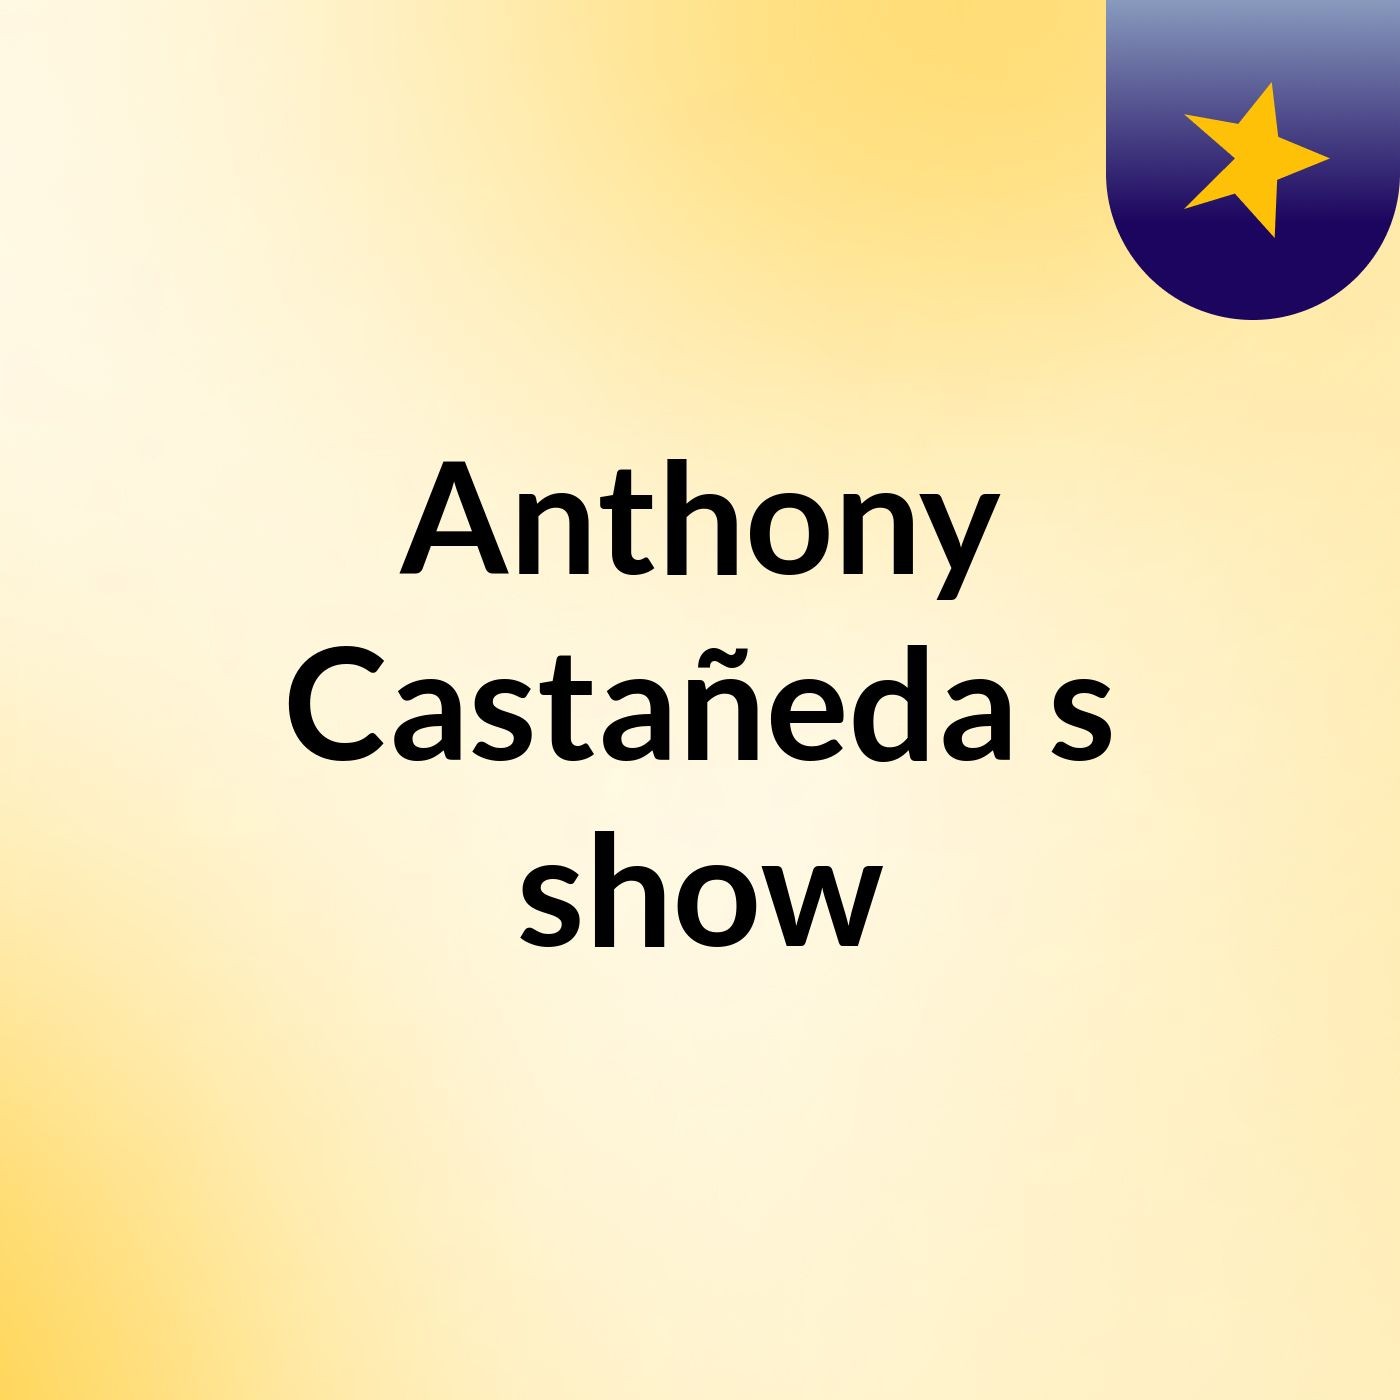 Anthony Castañeda's show